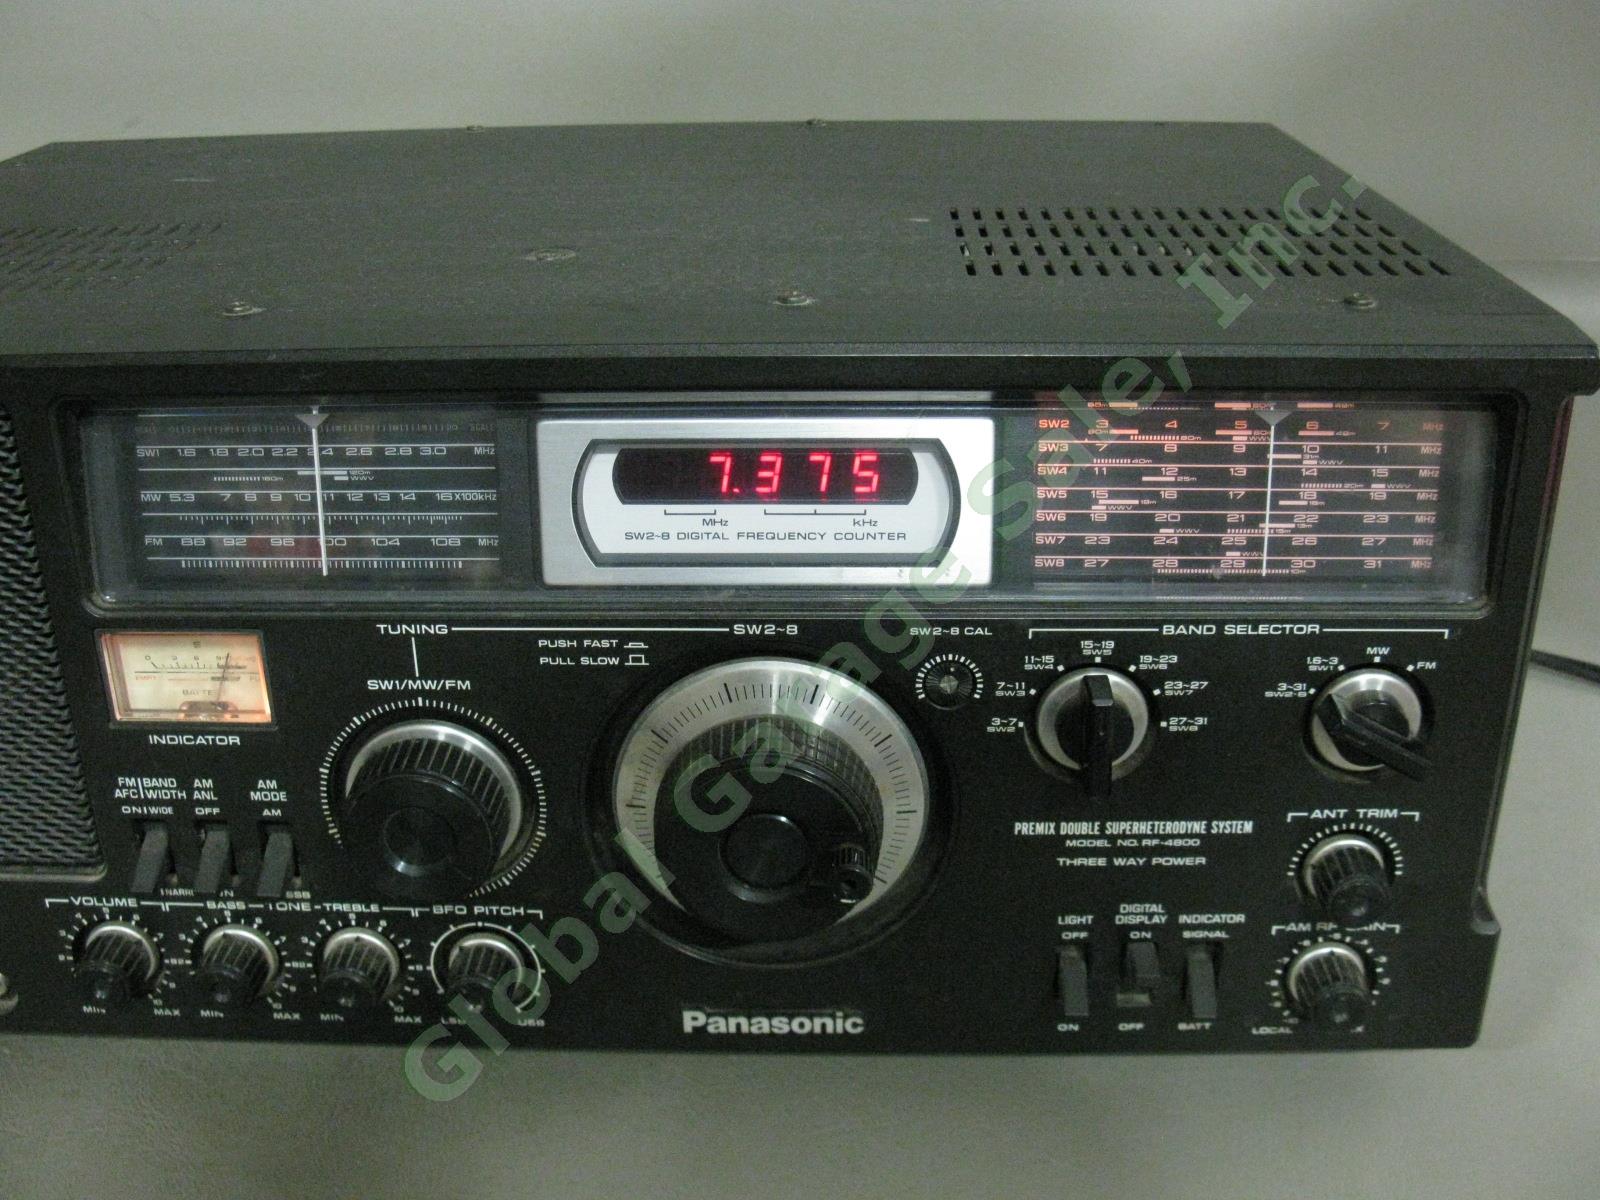 Panasonic RF-4800 FM-AM-SSB-CW 10-Band Shortwave Radio Communication Receiver NR 3